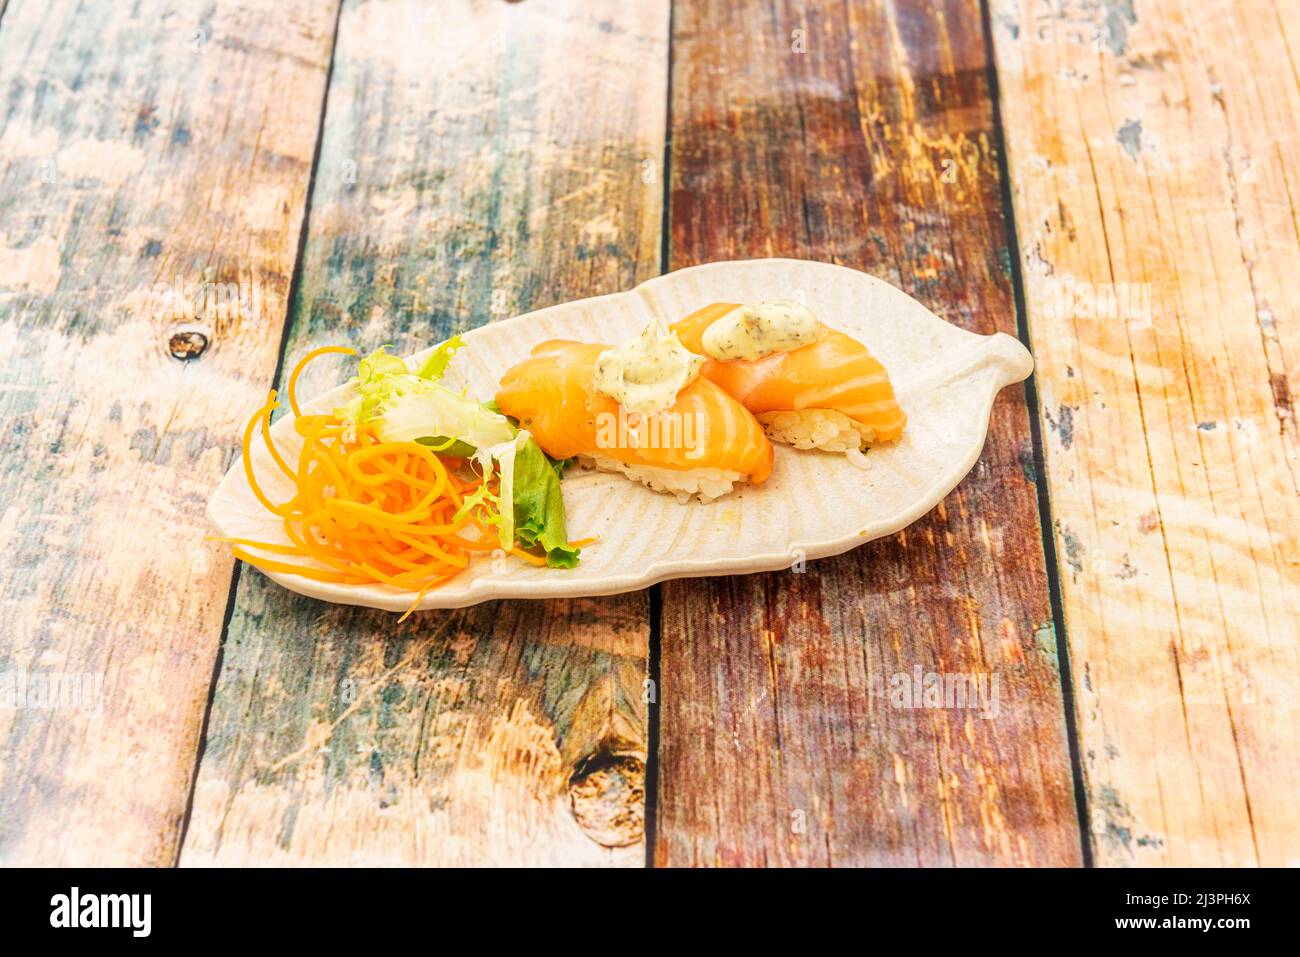 nigiris, sabrosas piezas de la cocina japonesa elaboradas con ingredientes de primera como arroz, salmón y atún de alta calidad Stock Photo